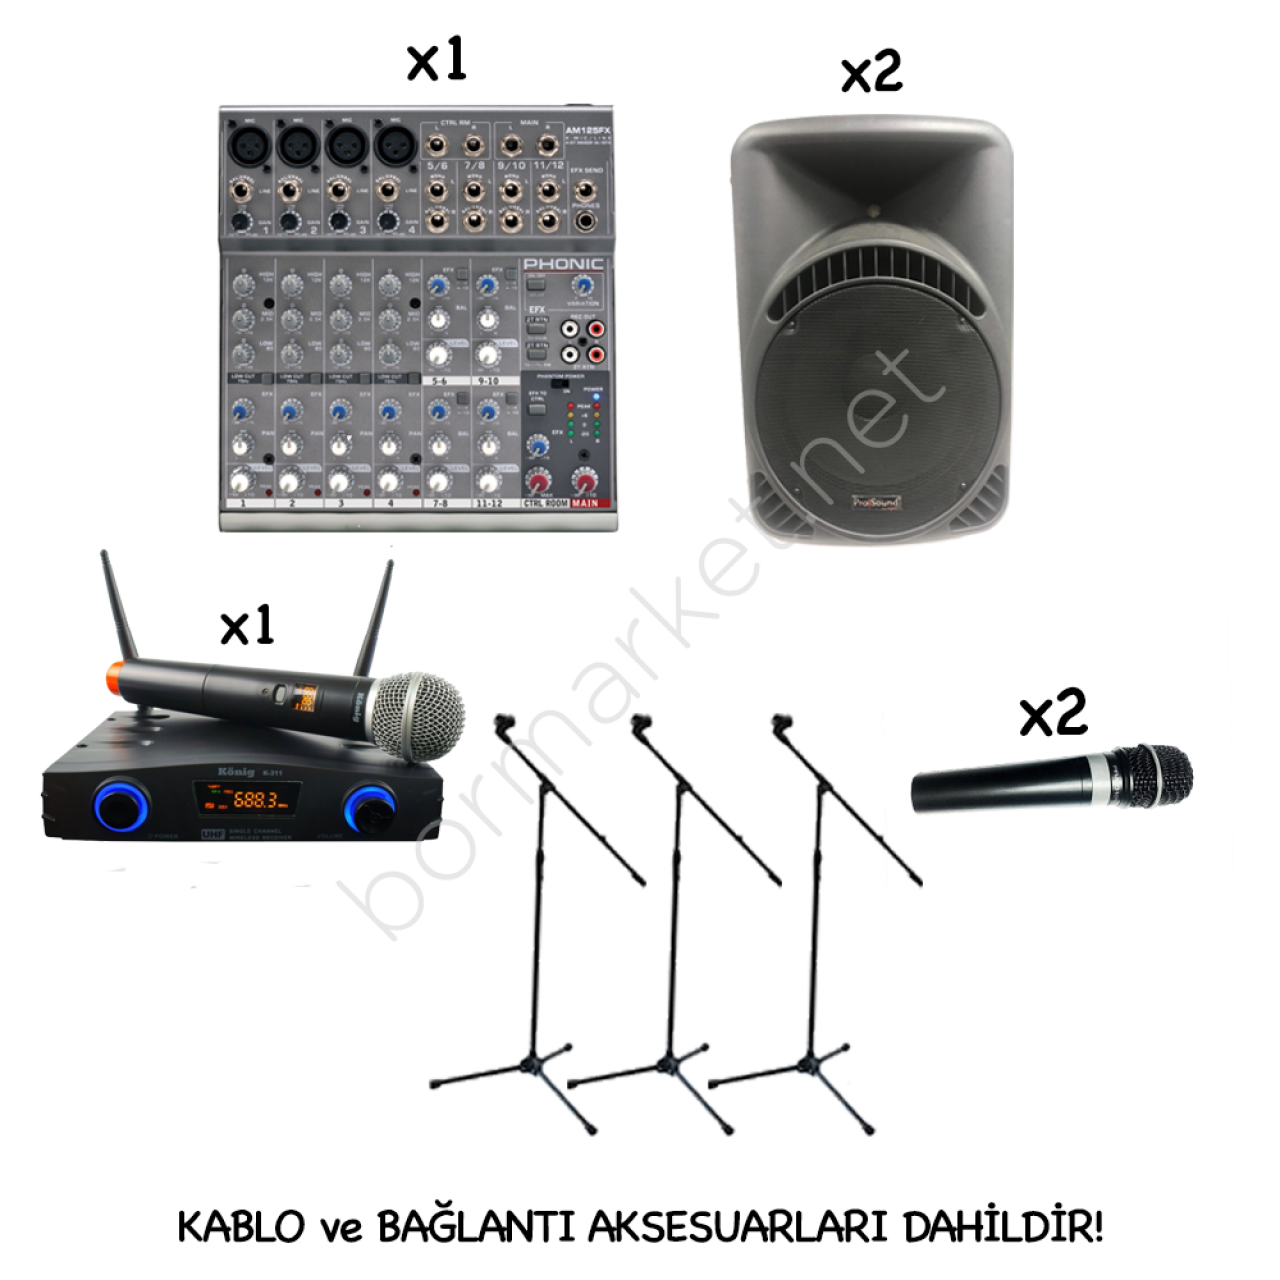 Uygun Fiyatlı Ses Sistemi Paketi 1